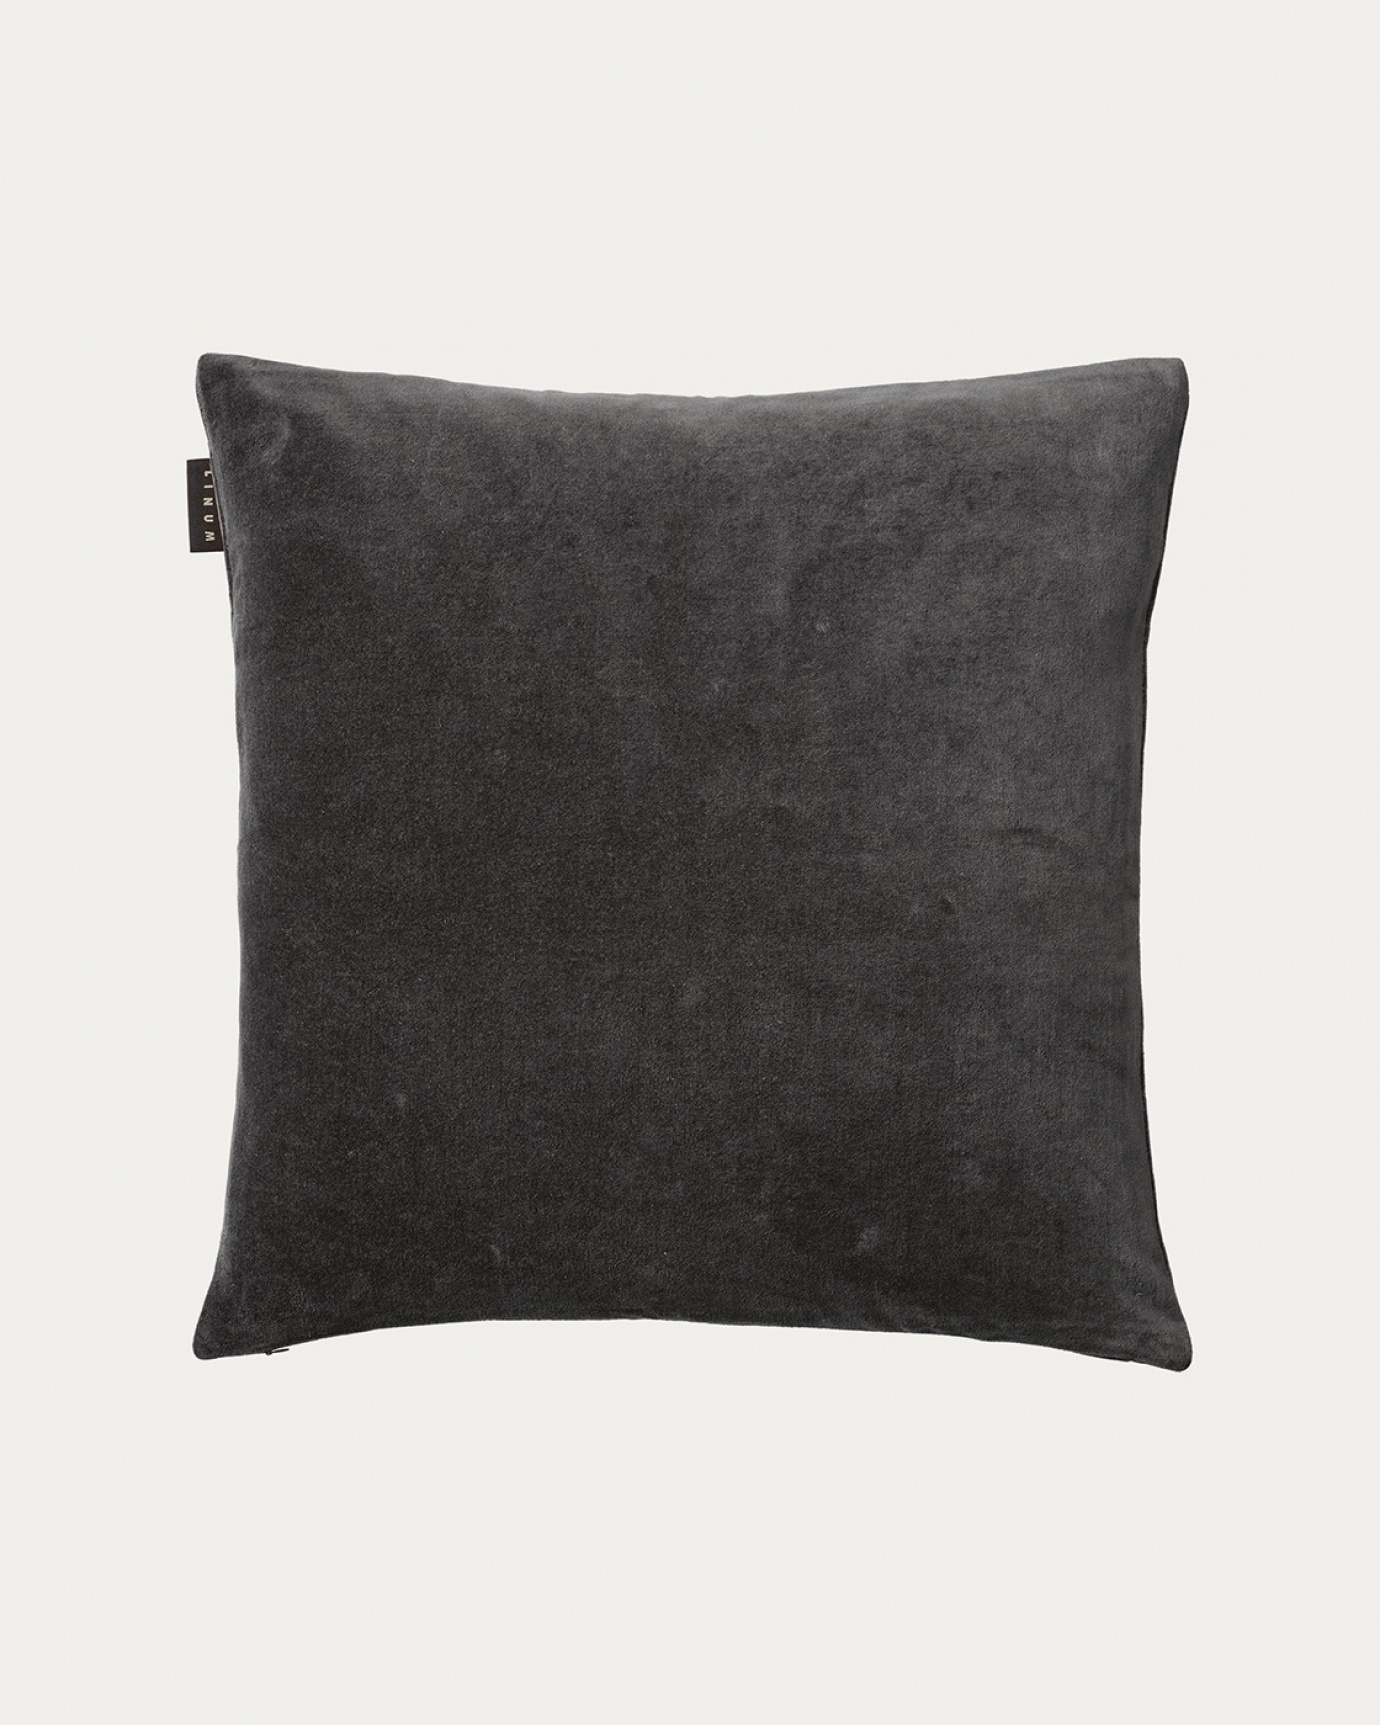 Produktbild dunkles anthrazitgrau PAOLO Kissenhülle aus weichem Baumwollsamt von LINUM DESIGN. Größe 50x50 cm.